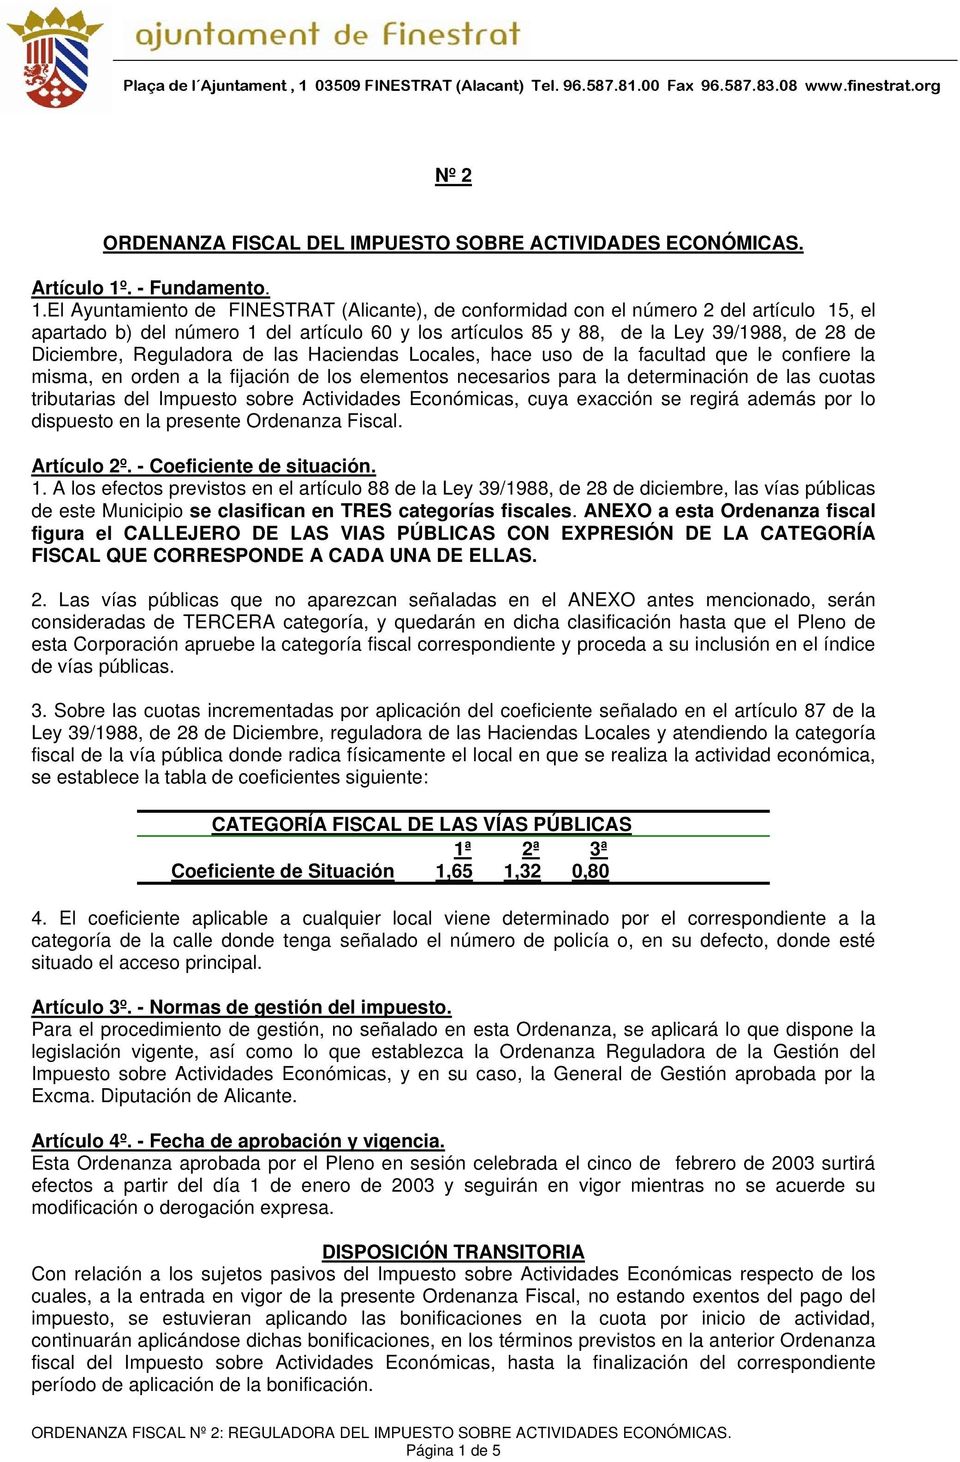 El Ayuntamiento de FINESTRAT (Alicante), de conformidad con el número 2 del artículo 15, el apartado b) del número 1 del artículo 60 y los artículos 85 y 88, de la Ley 39/1988, de 28 de Diciembre,